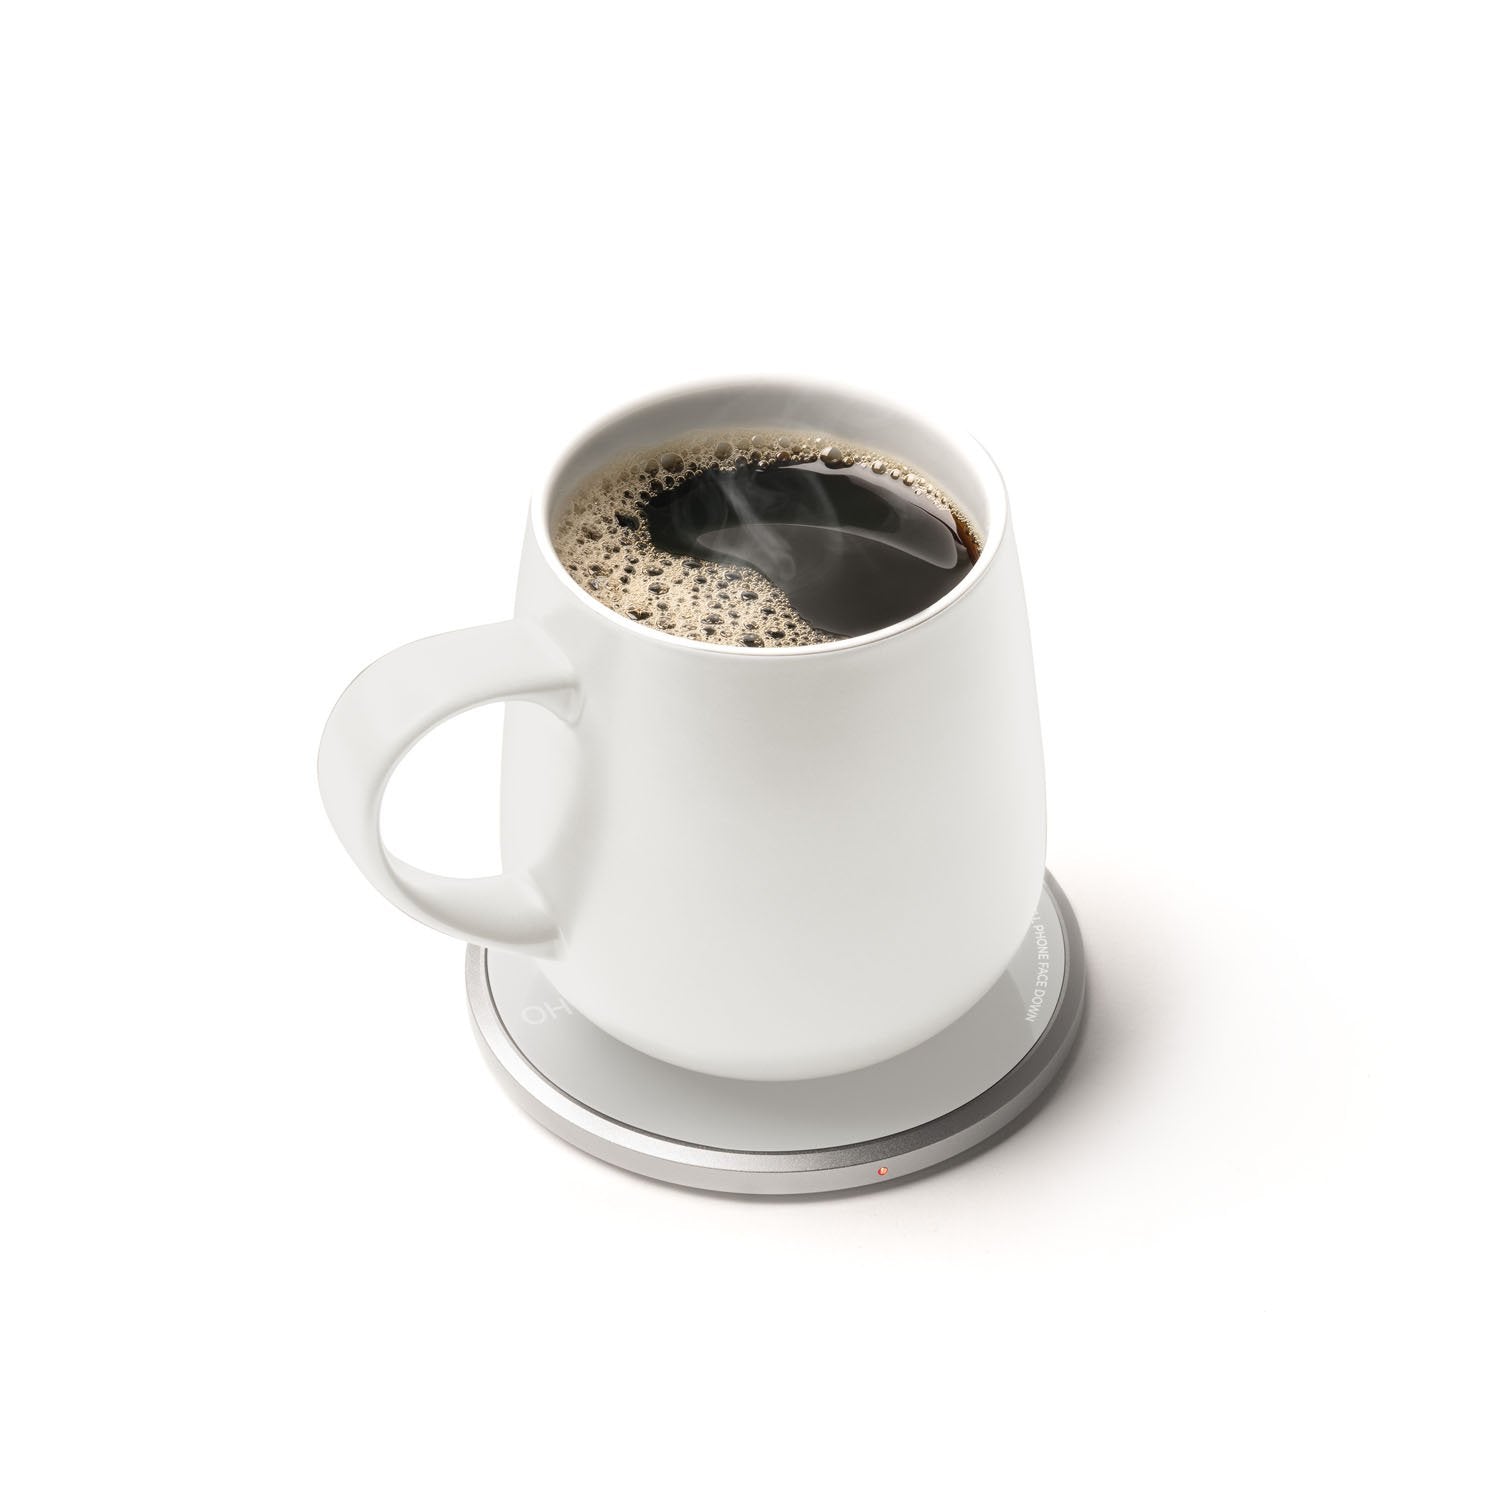 White mug with coffee on heating pad